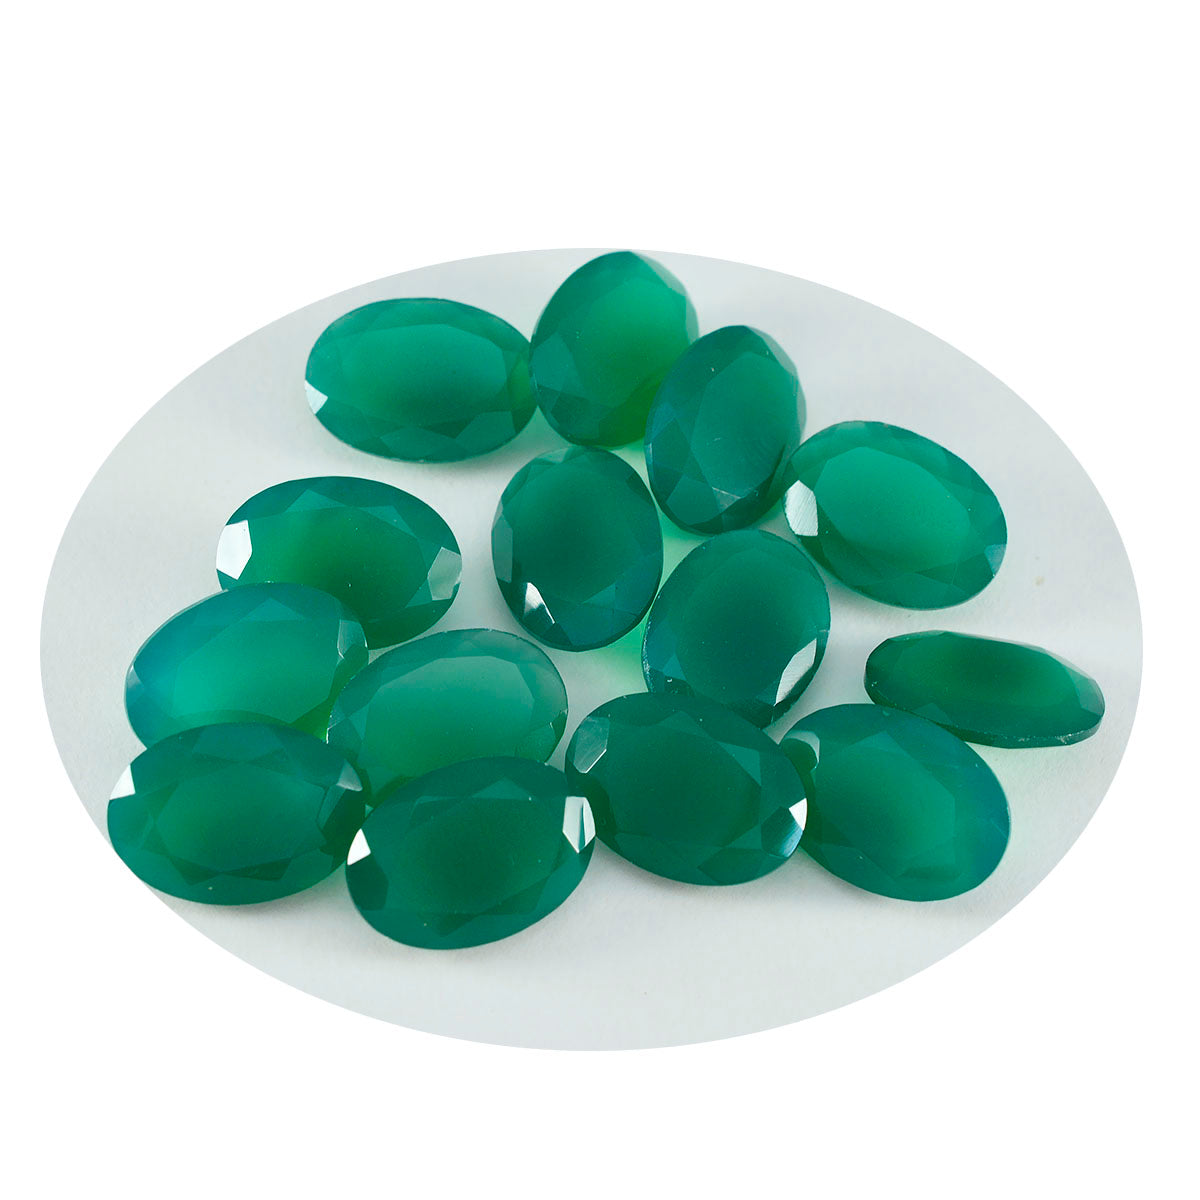 riyogems 1 шт. настоящий зеленый оникс ограненный 6x8 мм овальной формы прекрасный качественный свободный драгоценный камень